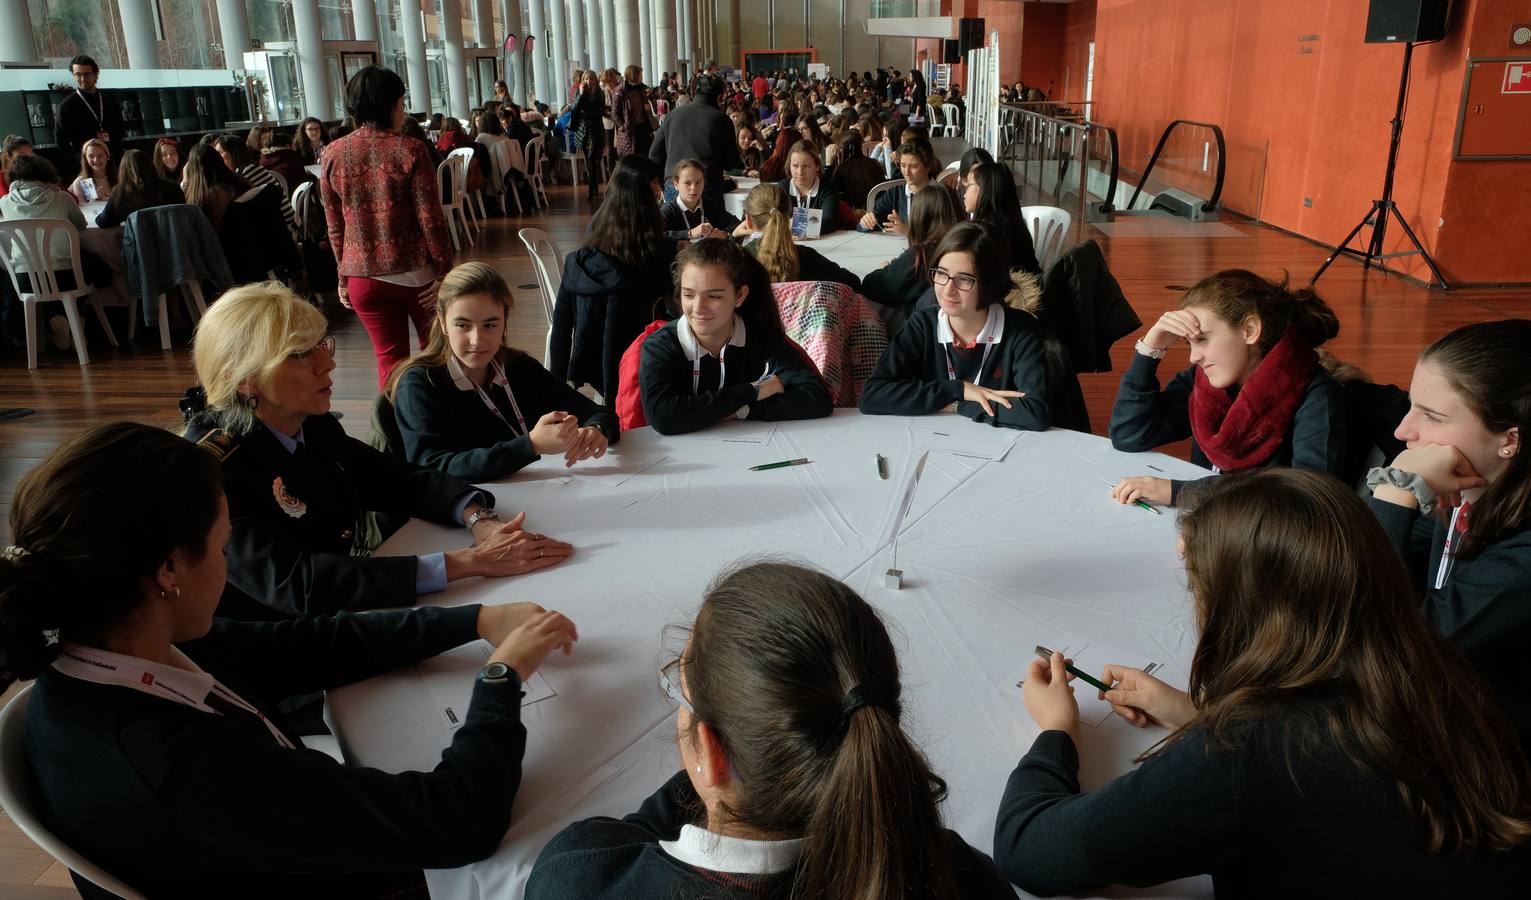 Cincuenta mujeres transmiten su ejemplo a más de 400 escolares de entre 9 y 18 años, en una cita celebrada en el auditorio Miguel Delibes de Valladolid